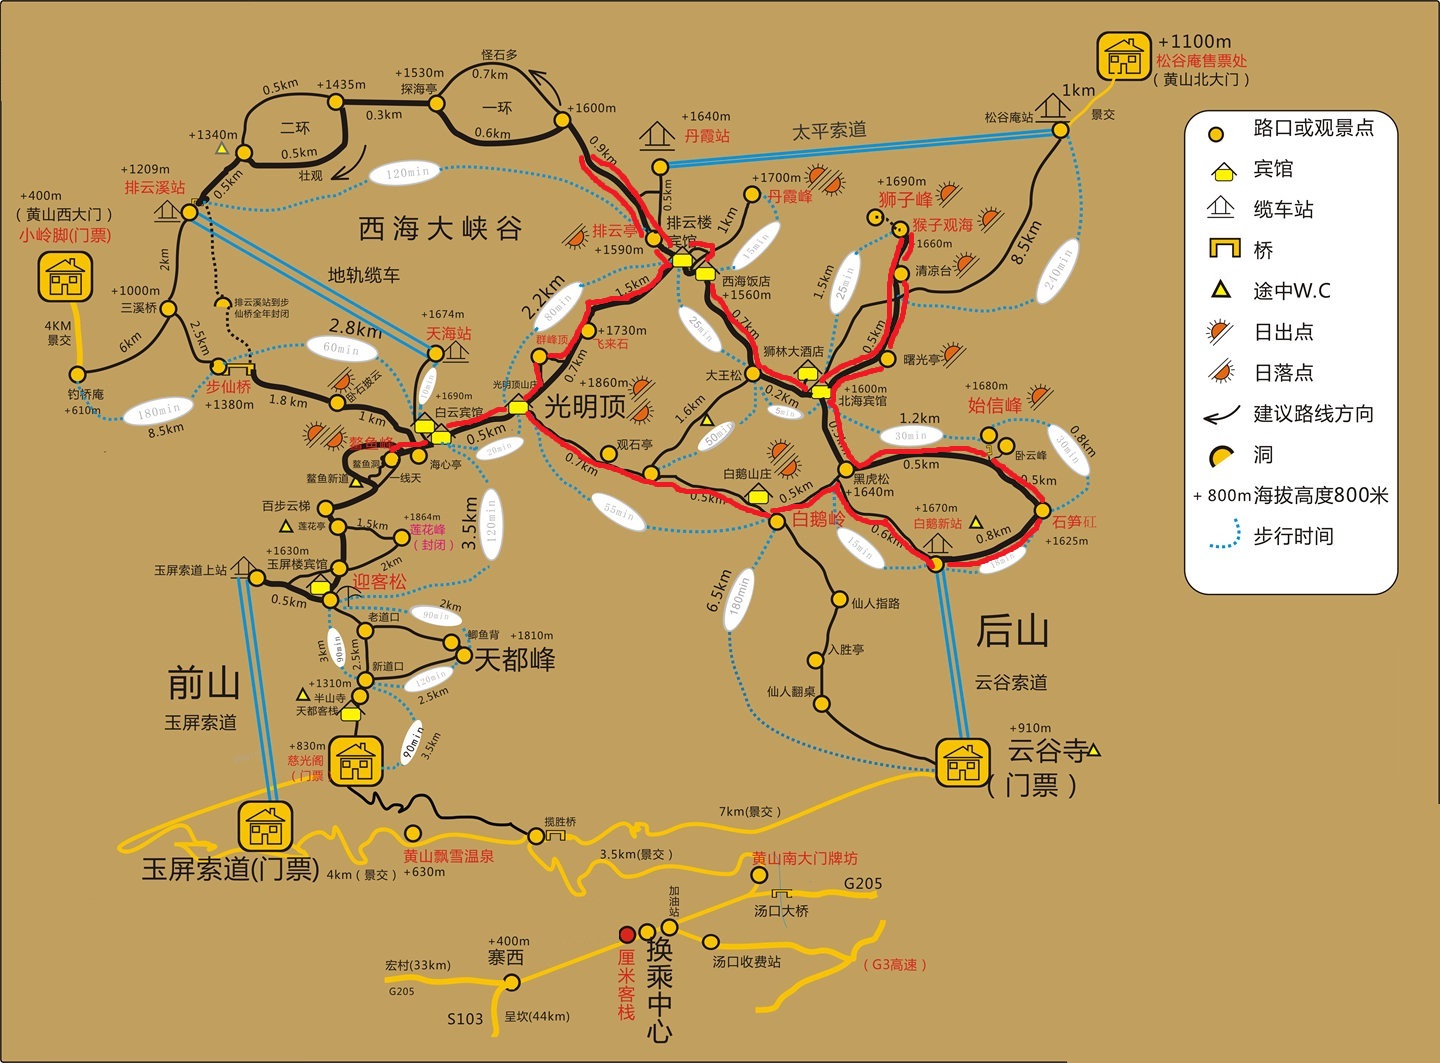 黄山市景区地图图片